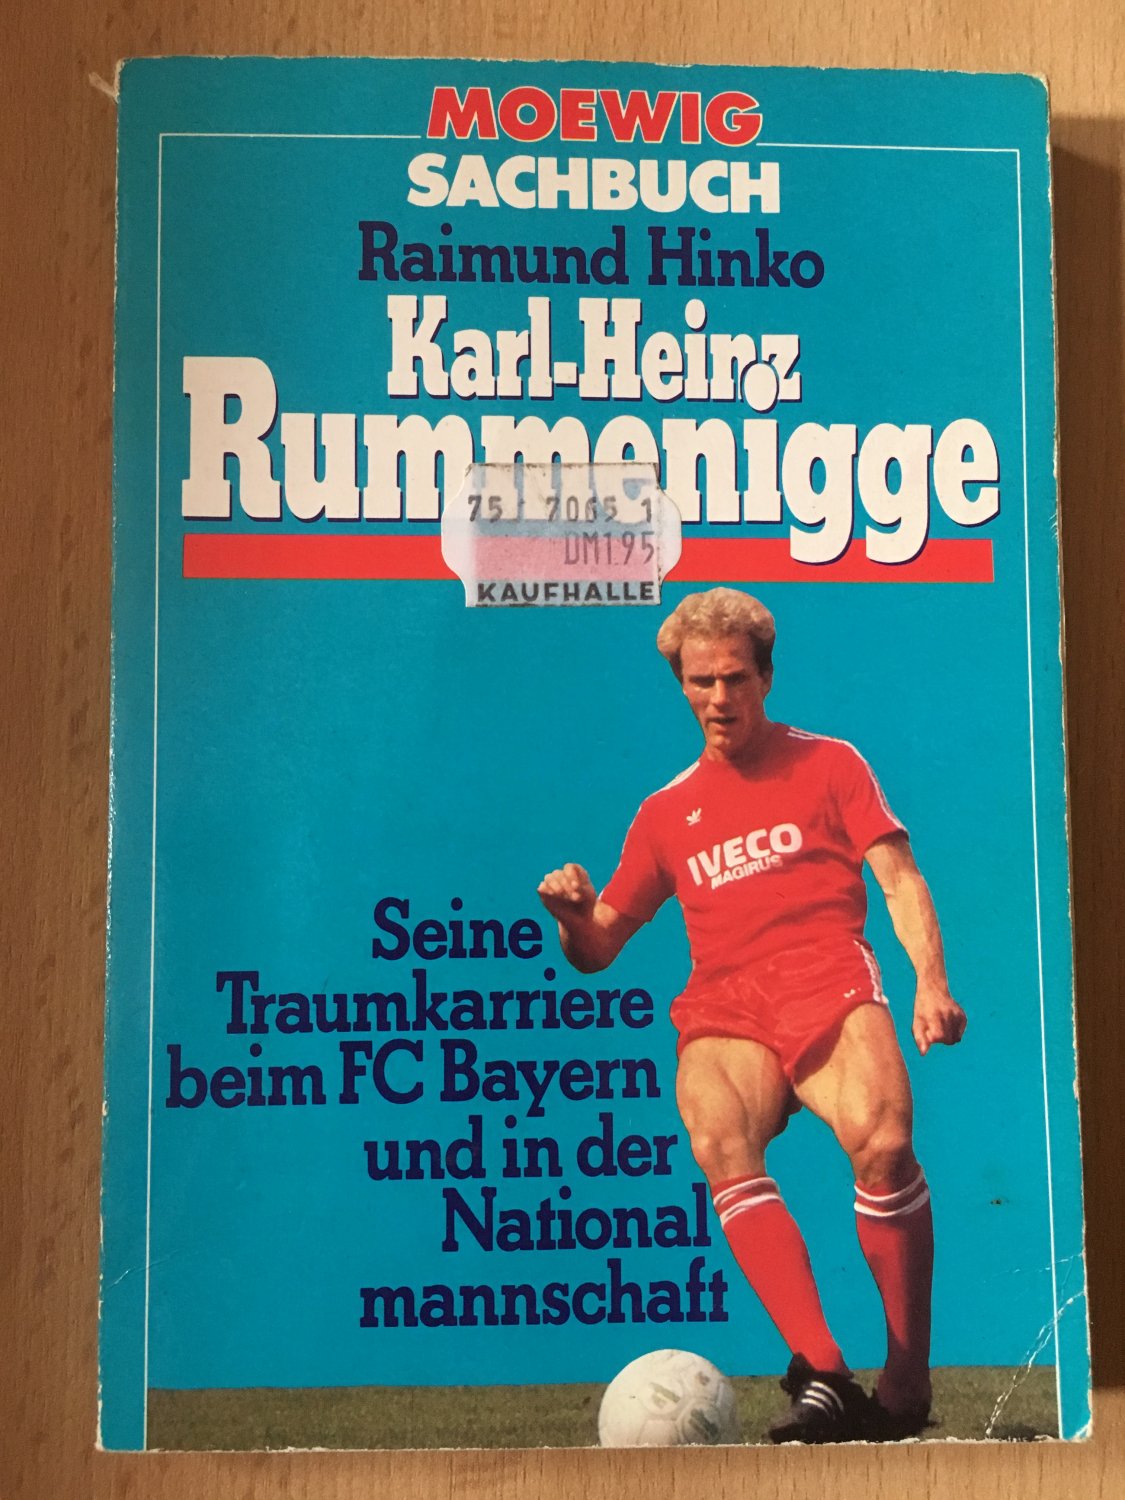 Karl Heinz Rummenigge Raimund Hinko Buch Gebraucht Kaufen A02l9y6l01zzm